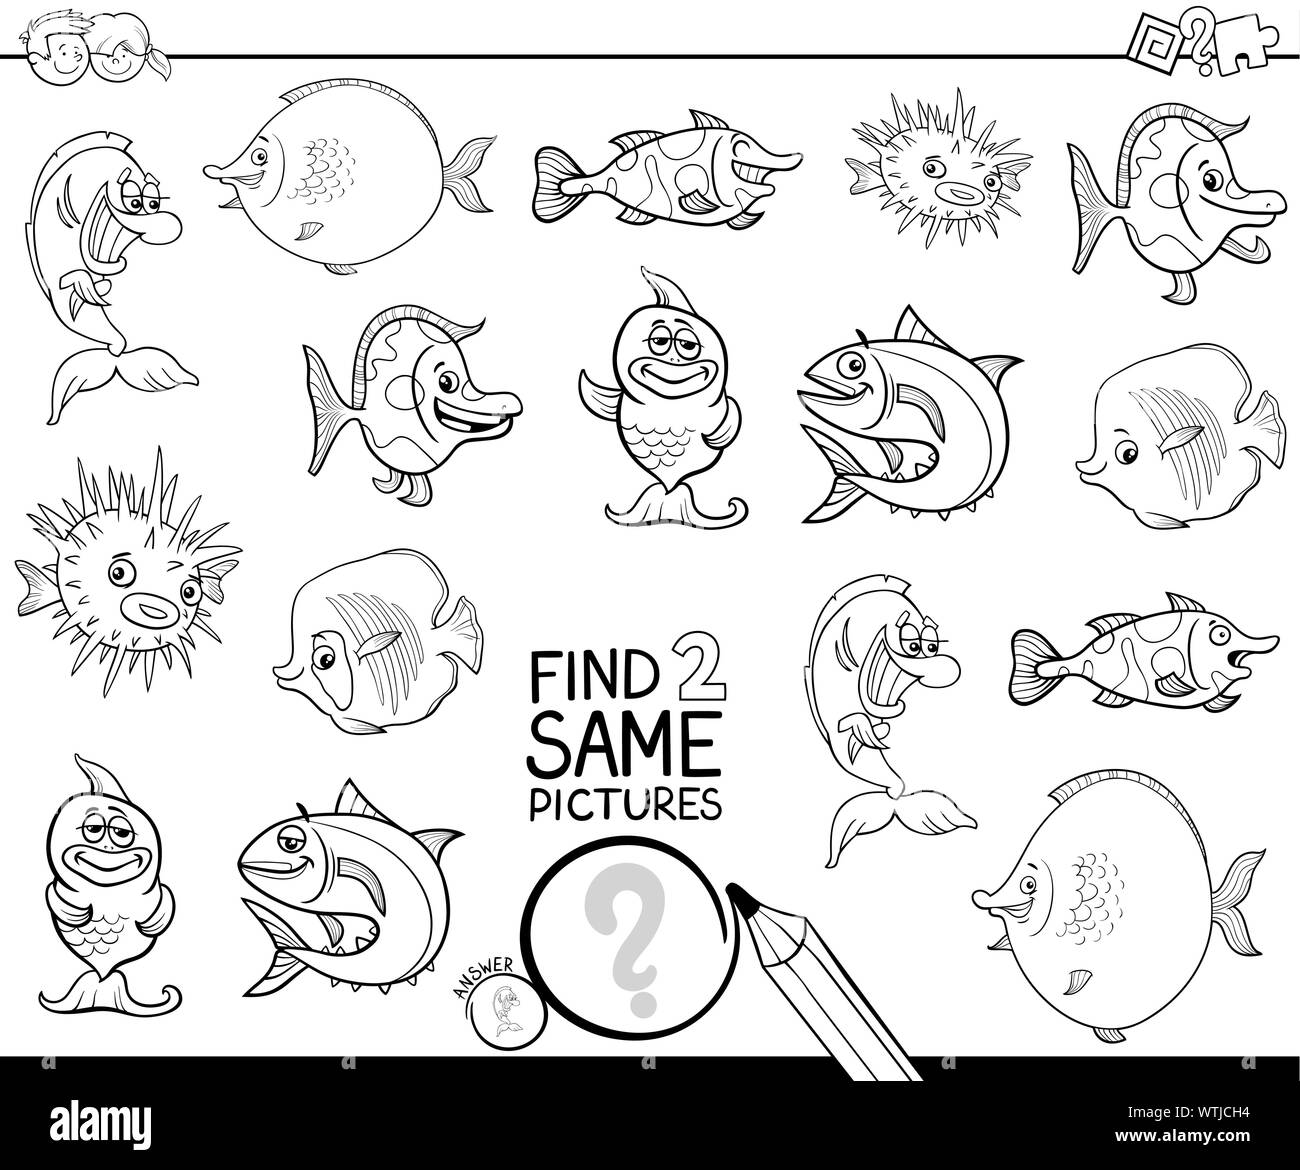 Cartoon noir et blanc Illustration de trouver deux mêmes images Jeu d'activités éducatives pour les enfants avec drôle Animal Poisson Coloriage Personnages Bo Illustration de Vecteur